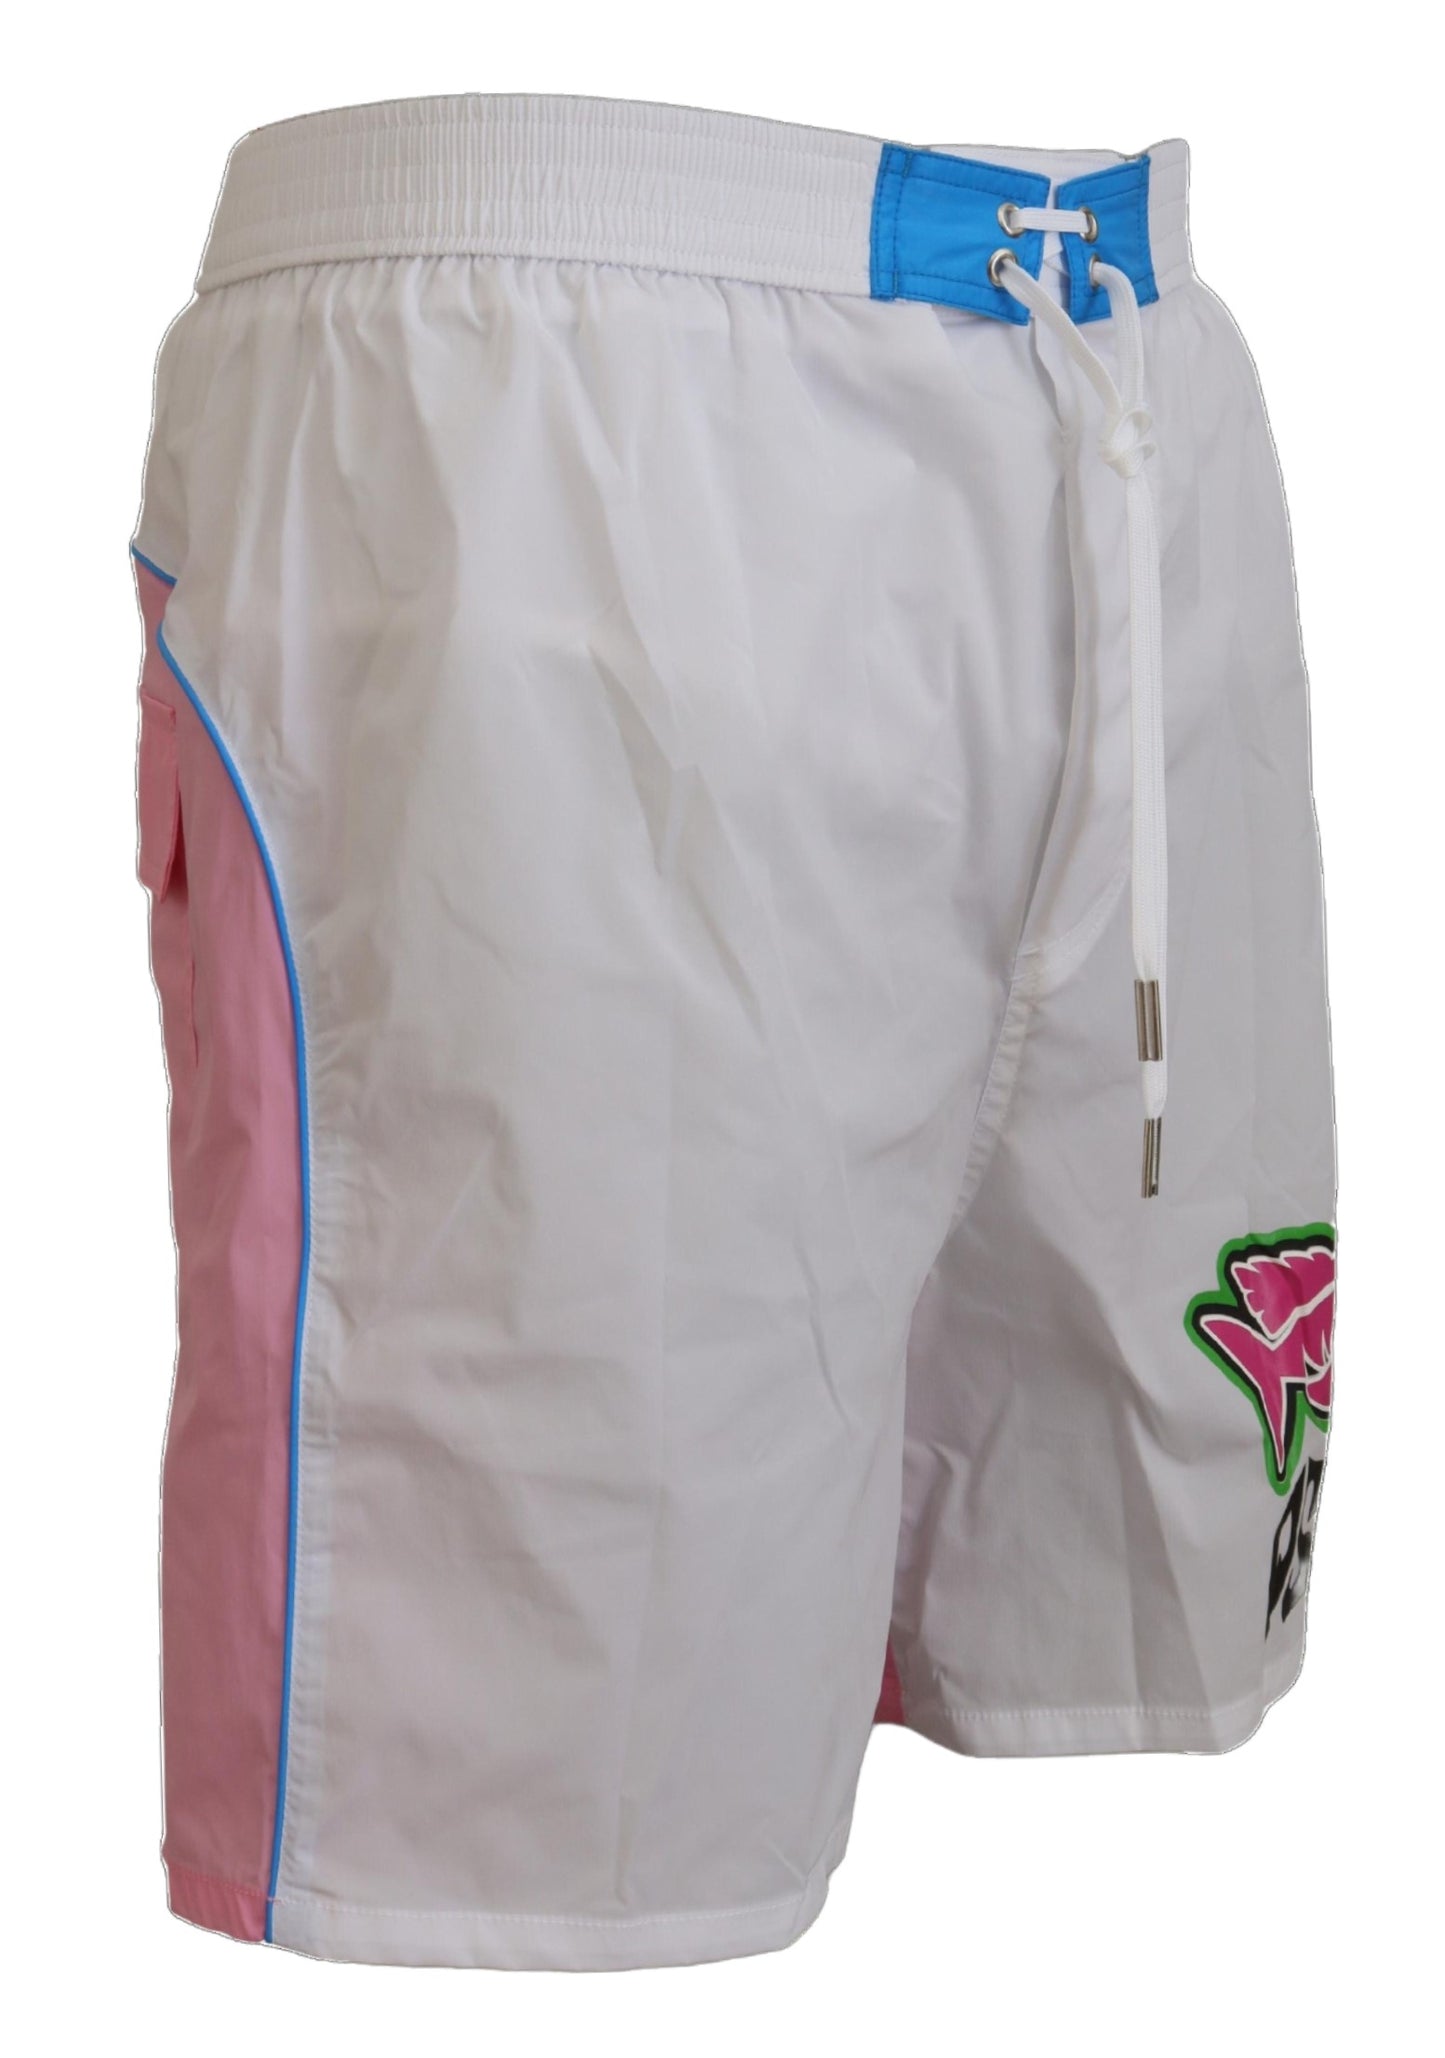 Dsquared² White Pink Logo Print Men Beachwear Shorts Badebekleidung